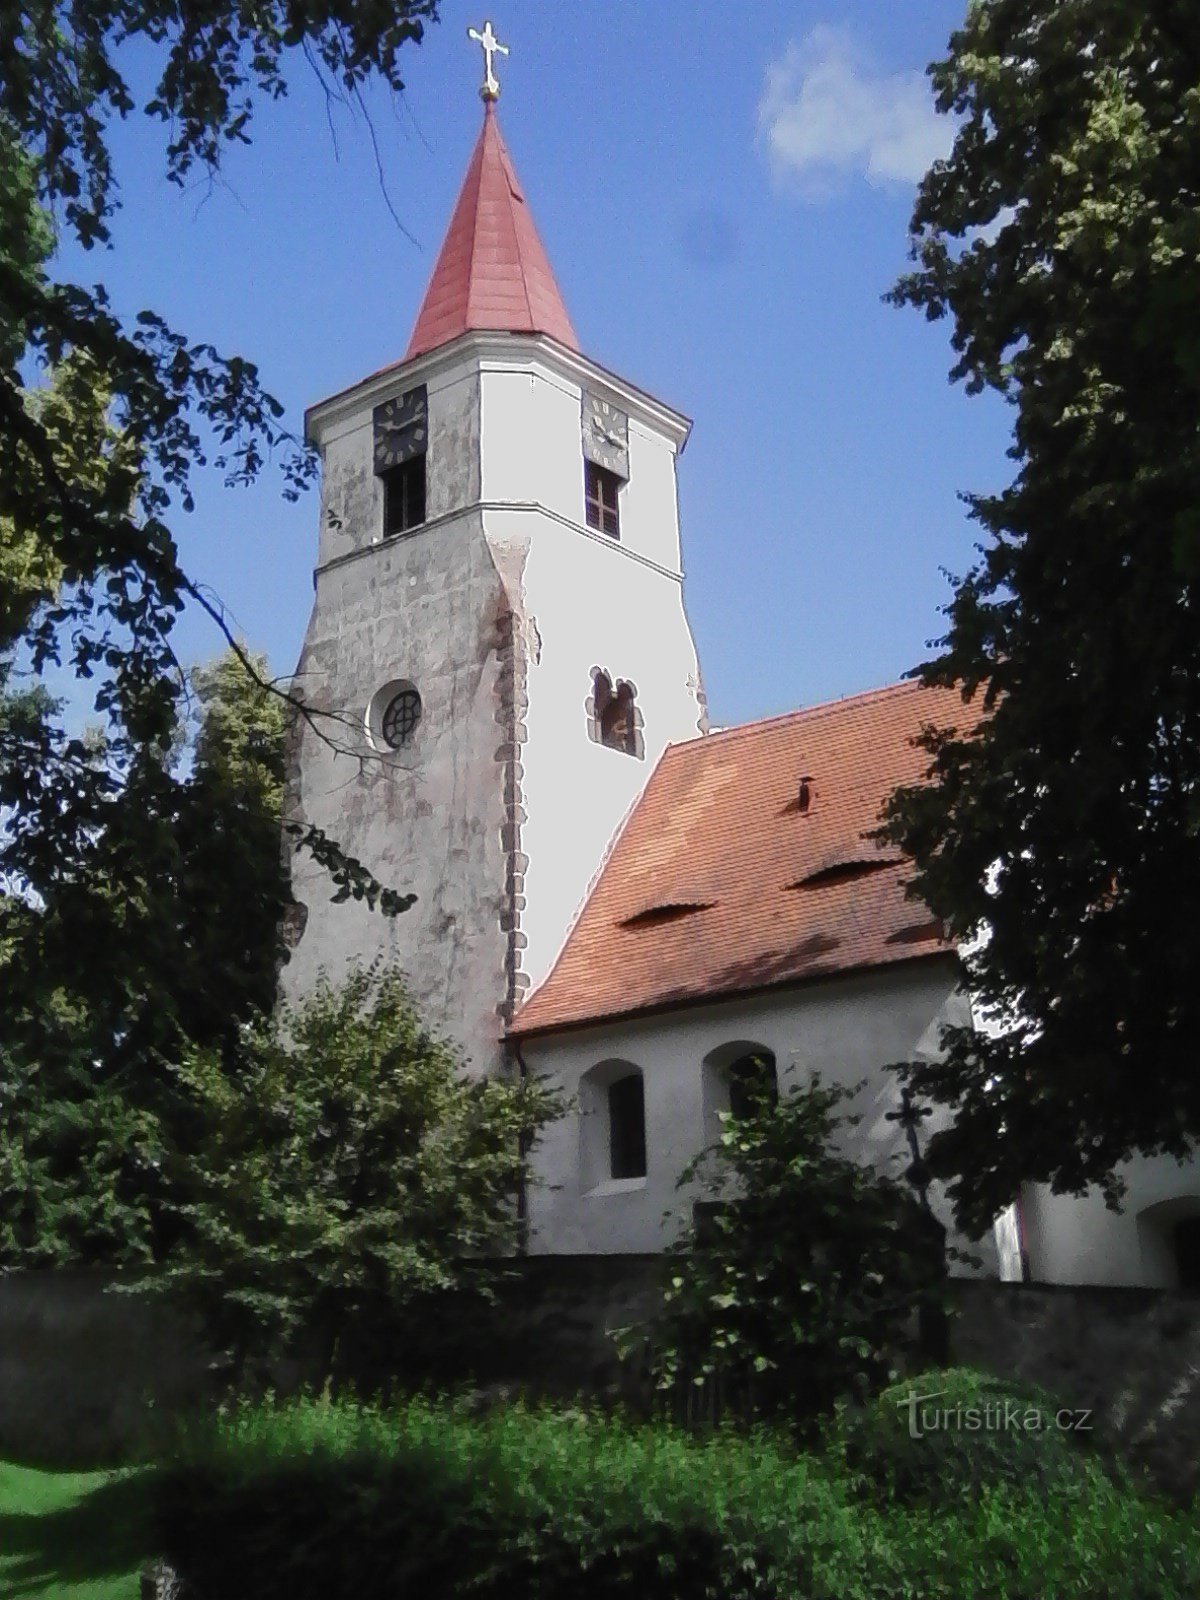 2. Laat-romaanse kerk van St. Mikuláš in Nechvalice, misschien van rond 1240.